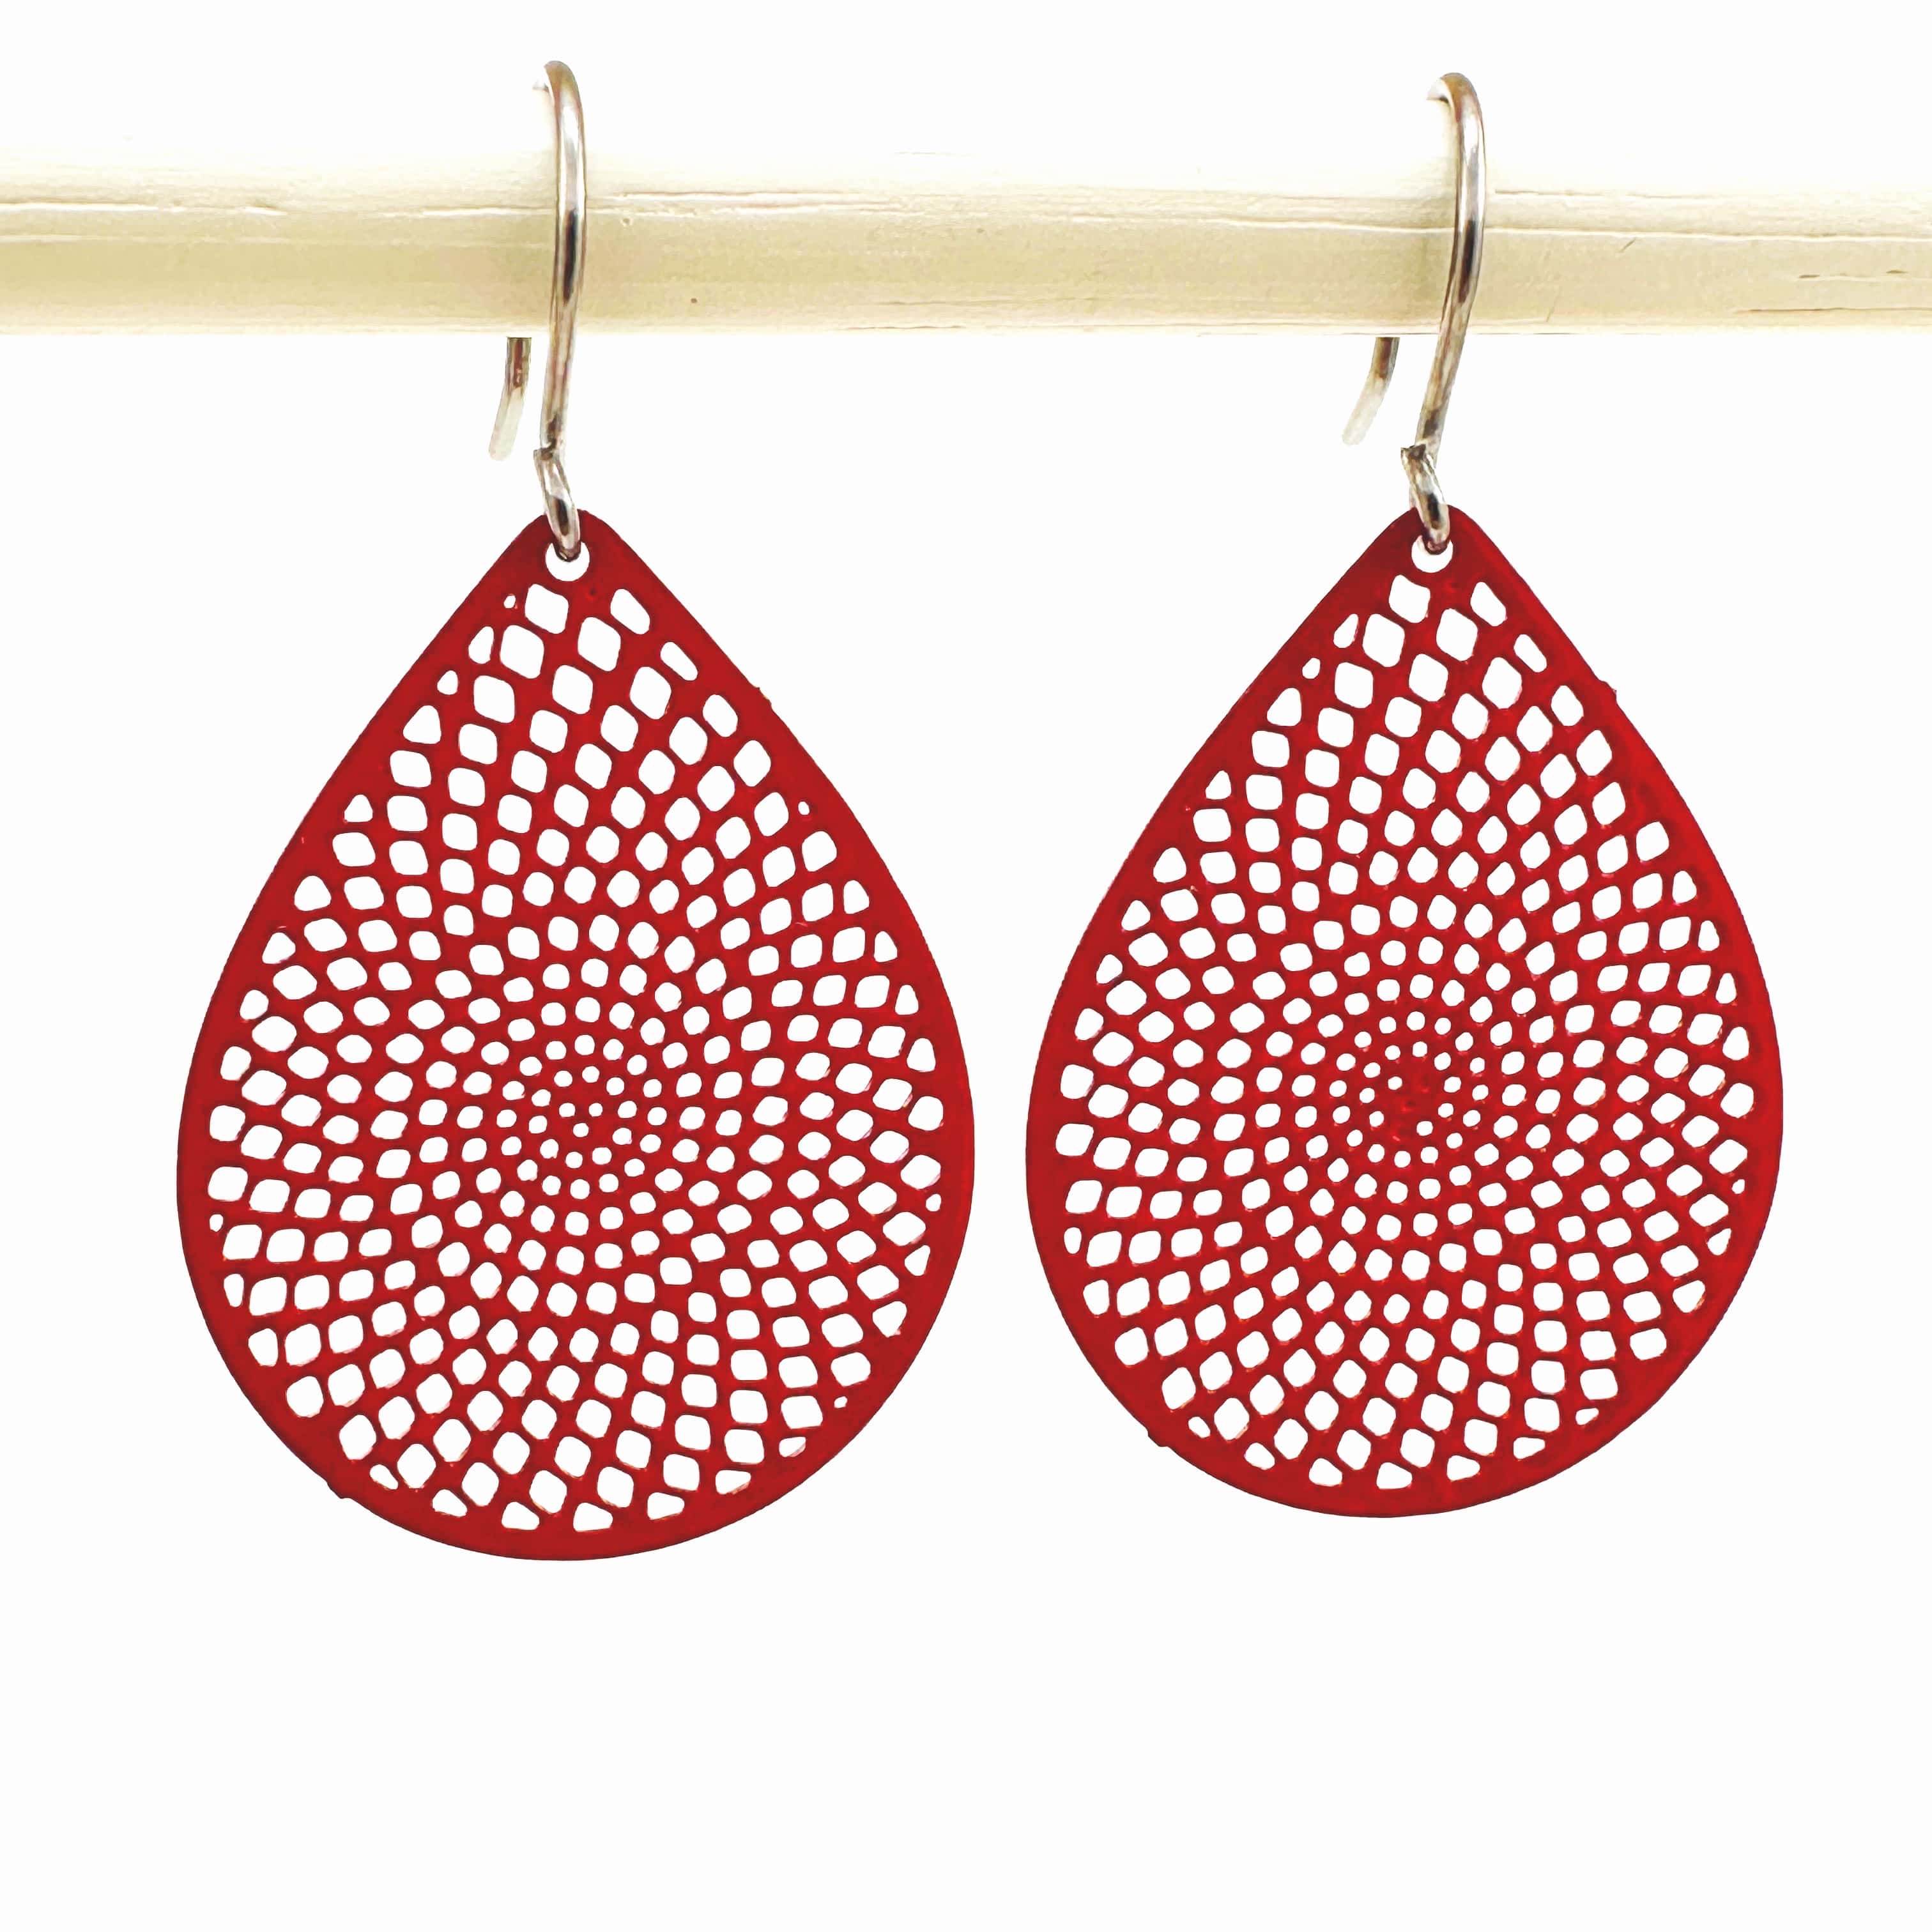 White/Black/Red teardrop earrings